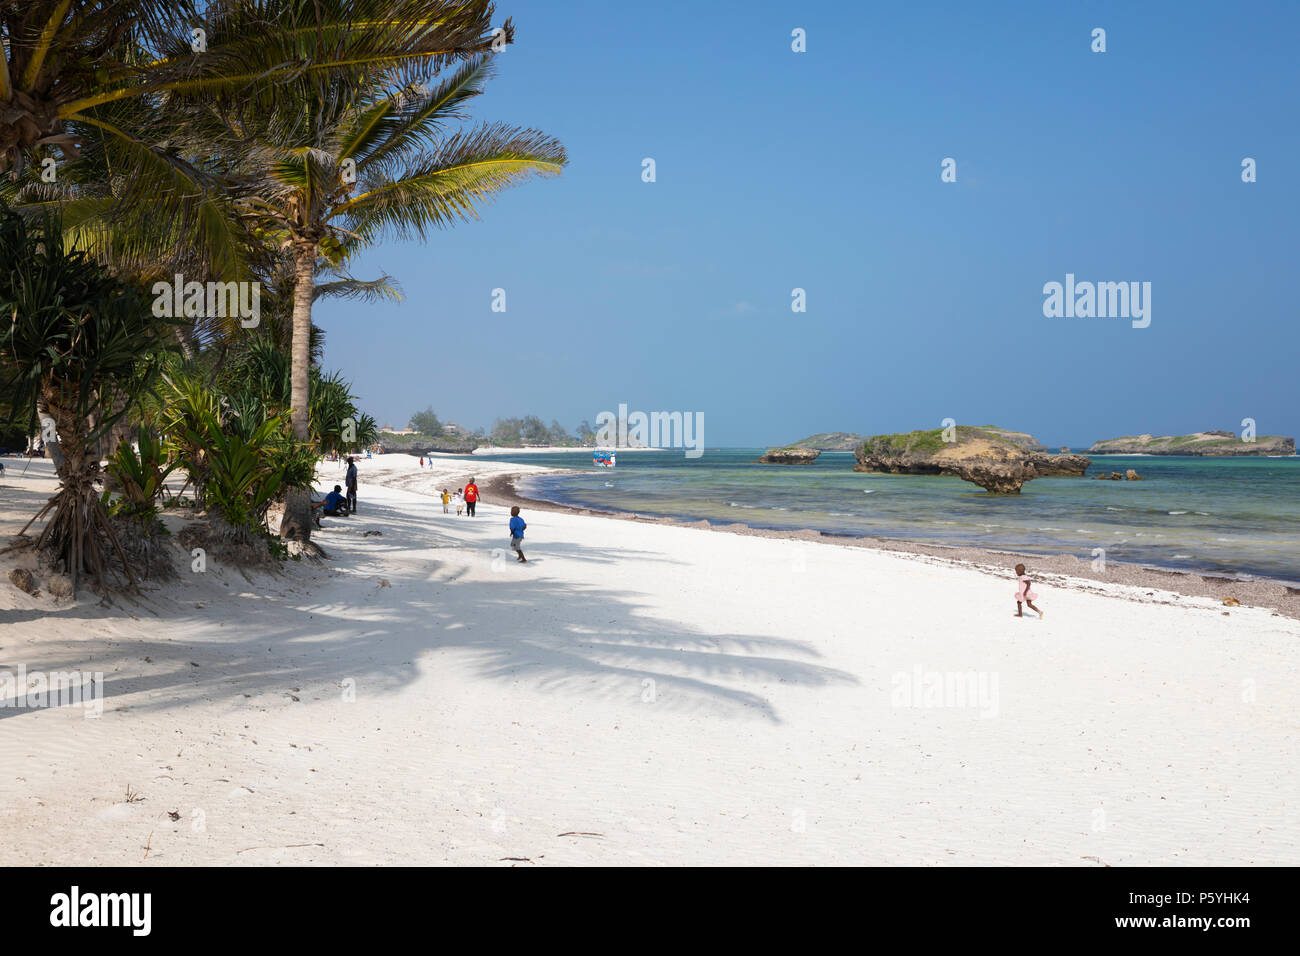 Stunning white sand beach and turquoise water of Watamu Beach, Watamu, near Malindi, Kenya, Africa Stock Photo